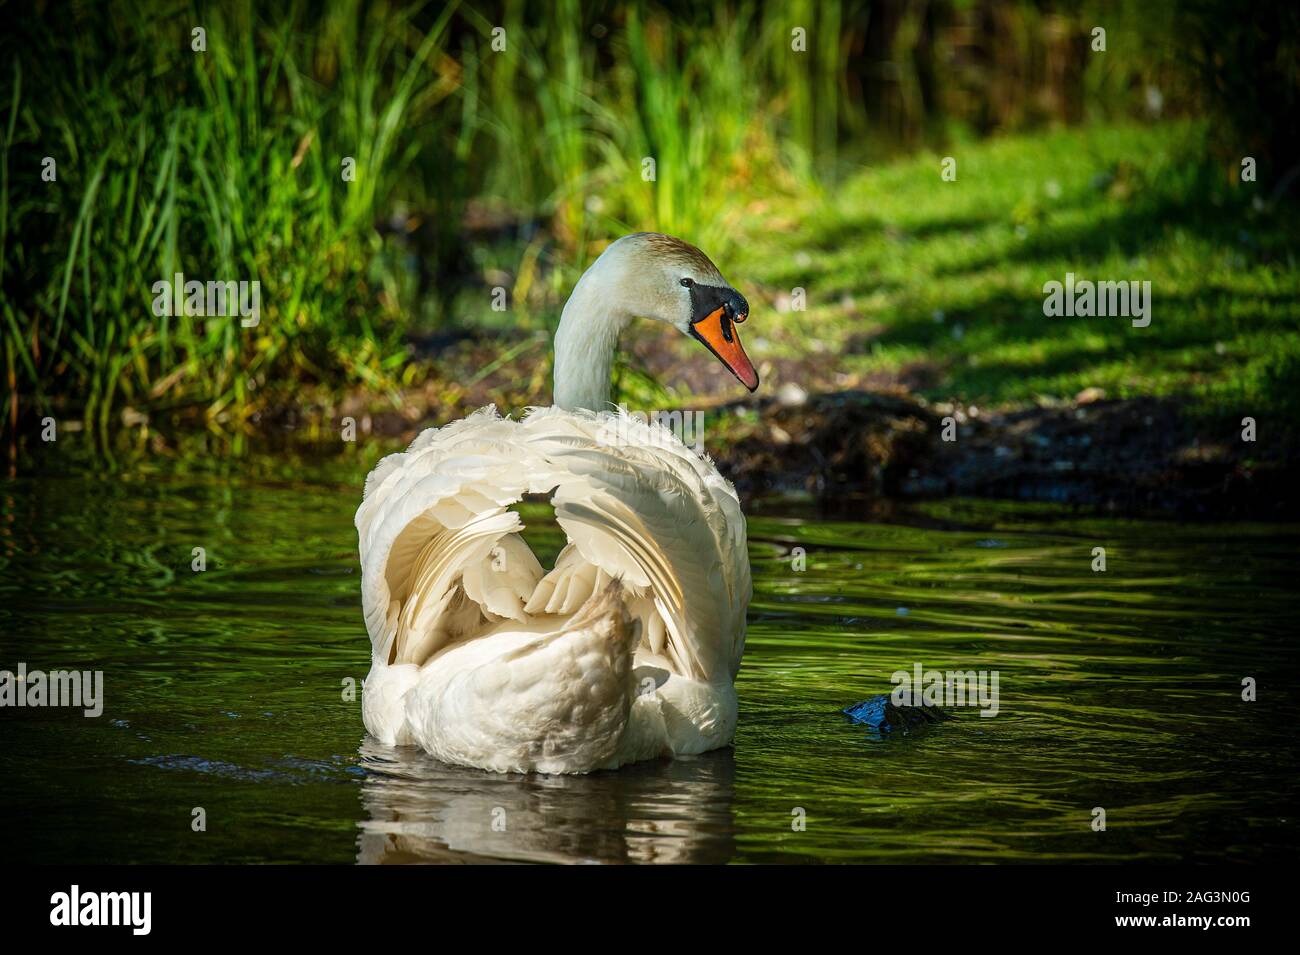 Piscina de cisne blanco en un estanque rodeado de hierba verde alta. Foto de stock